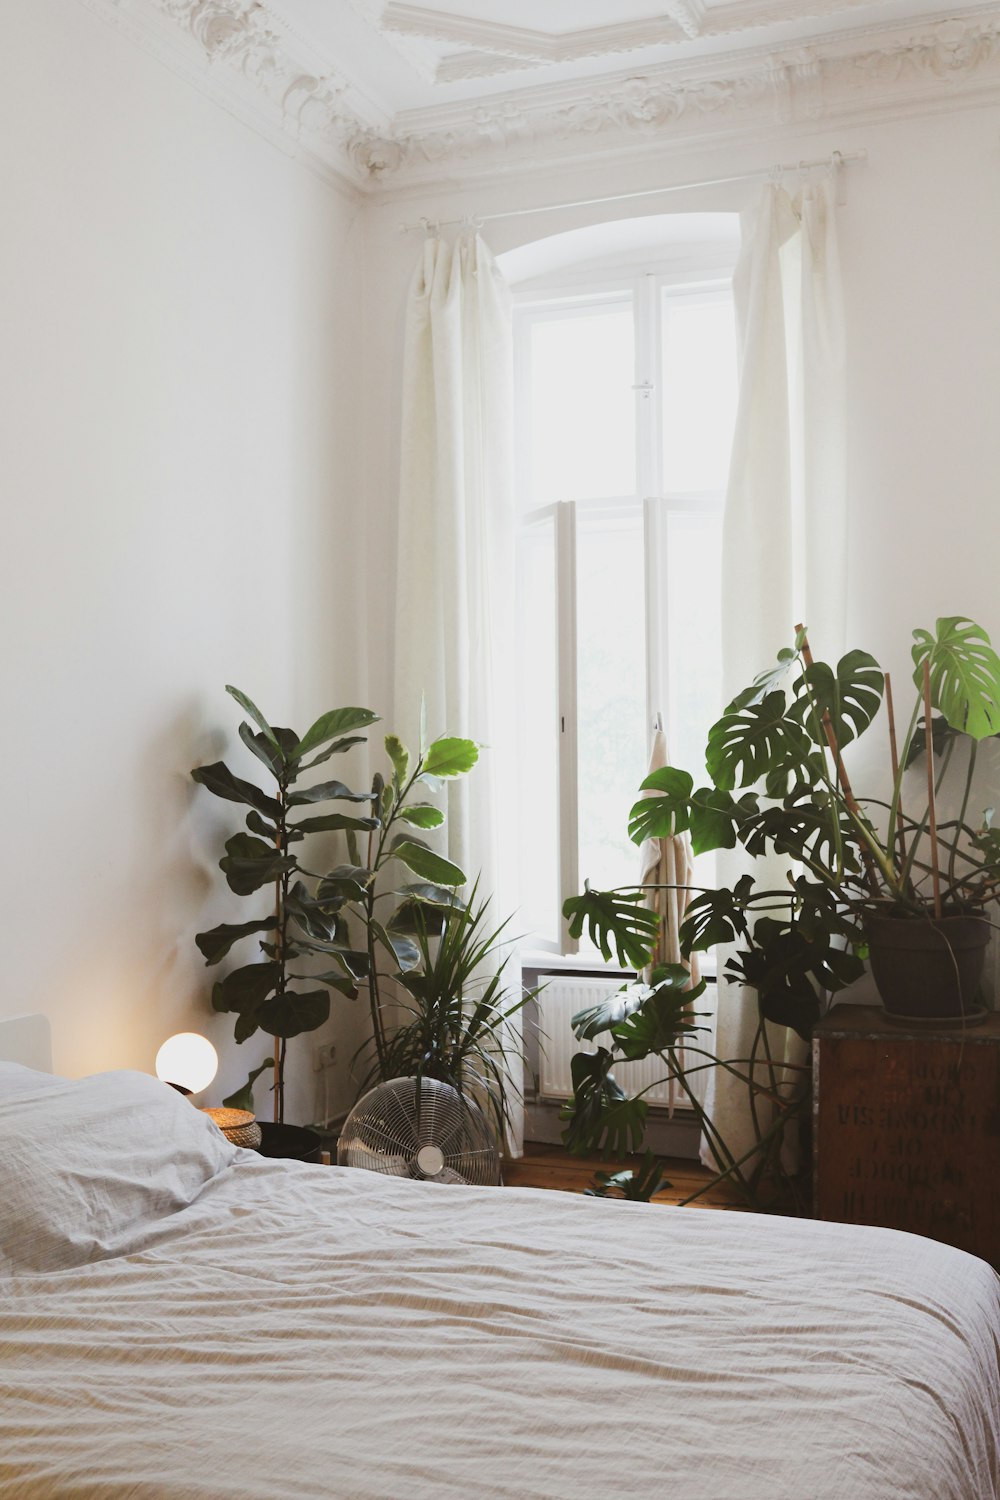 침대 근처의 녹색 화분